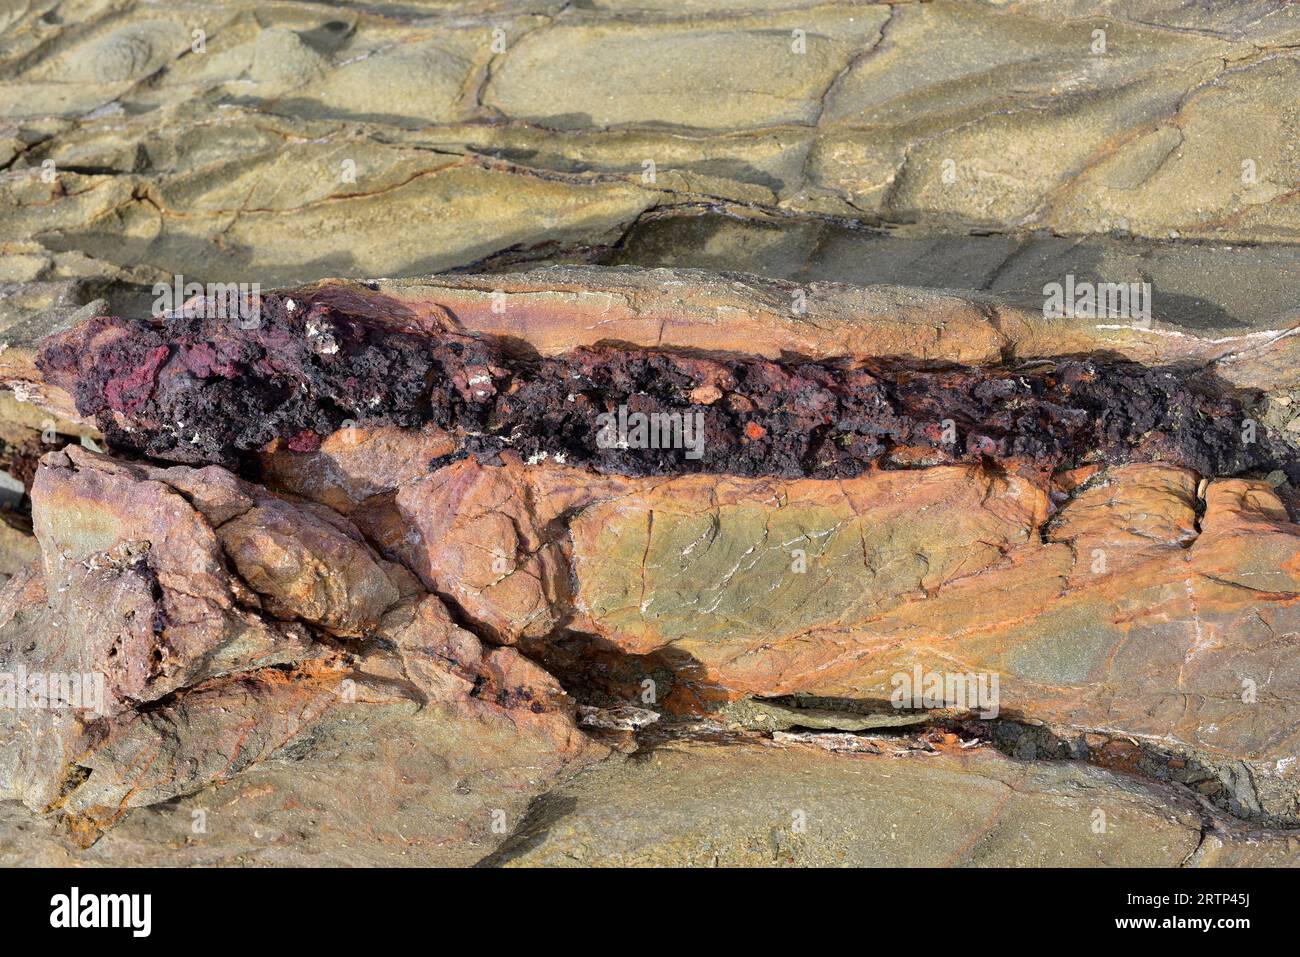 Vena ematite in una roccia turbiditica. Questa foto è stata scattata a Cap Favaritx, Isola di Minorca, Isole Baleari, Spagna. Foto Stock